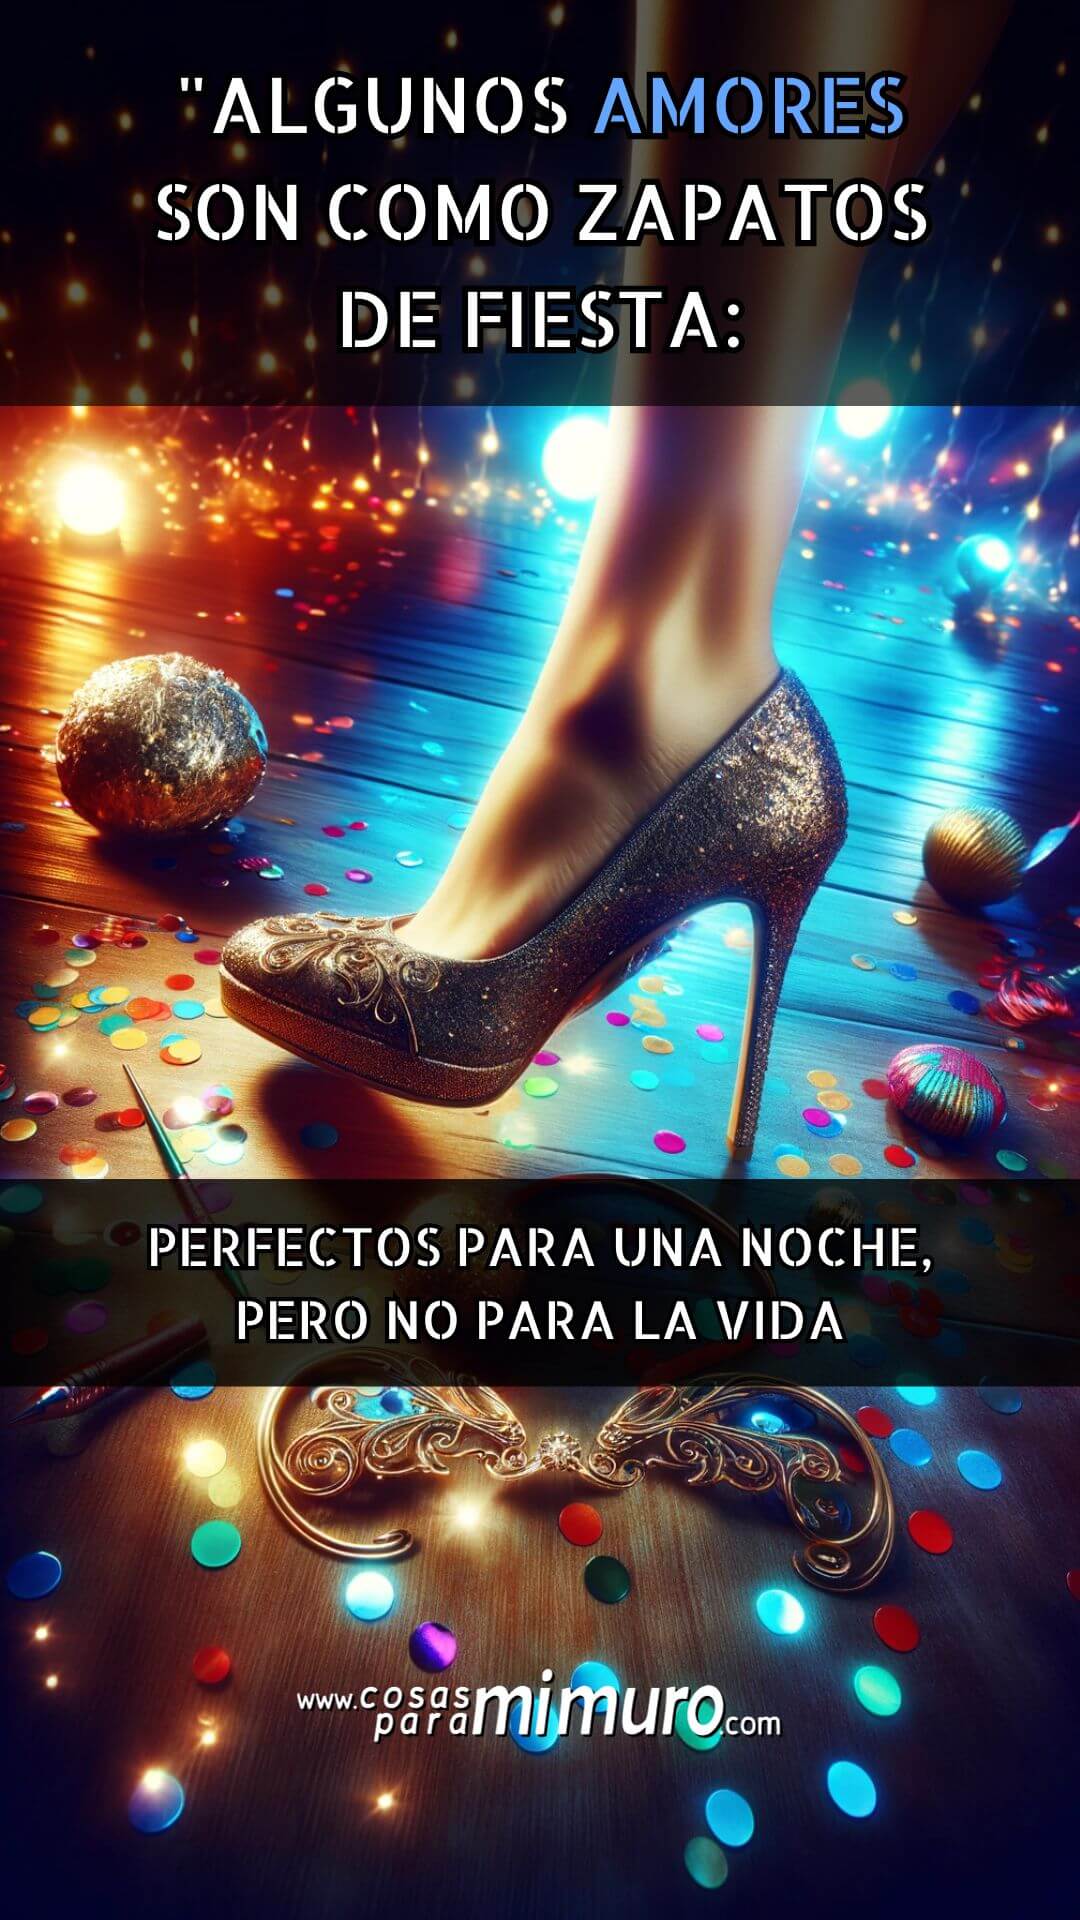 Algunos amores son como zapatos de fiesta perfectos para una noche, pero no para la vida.